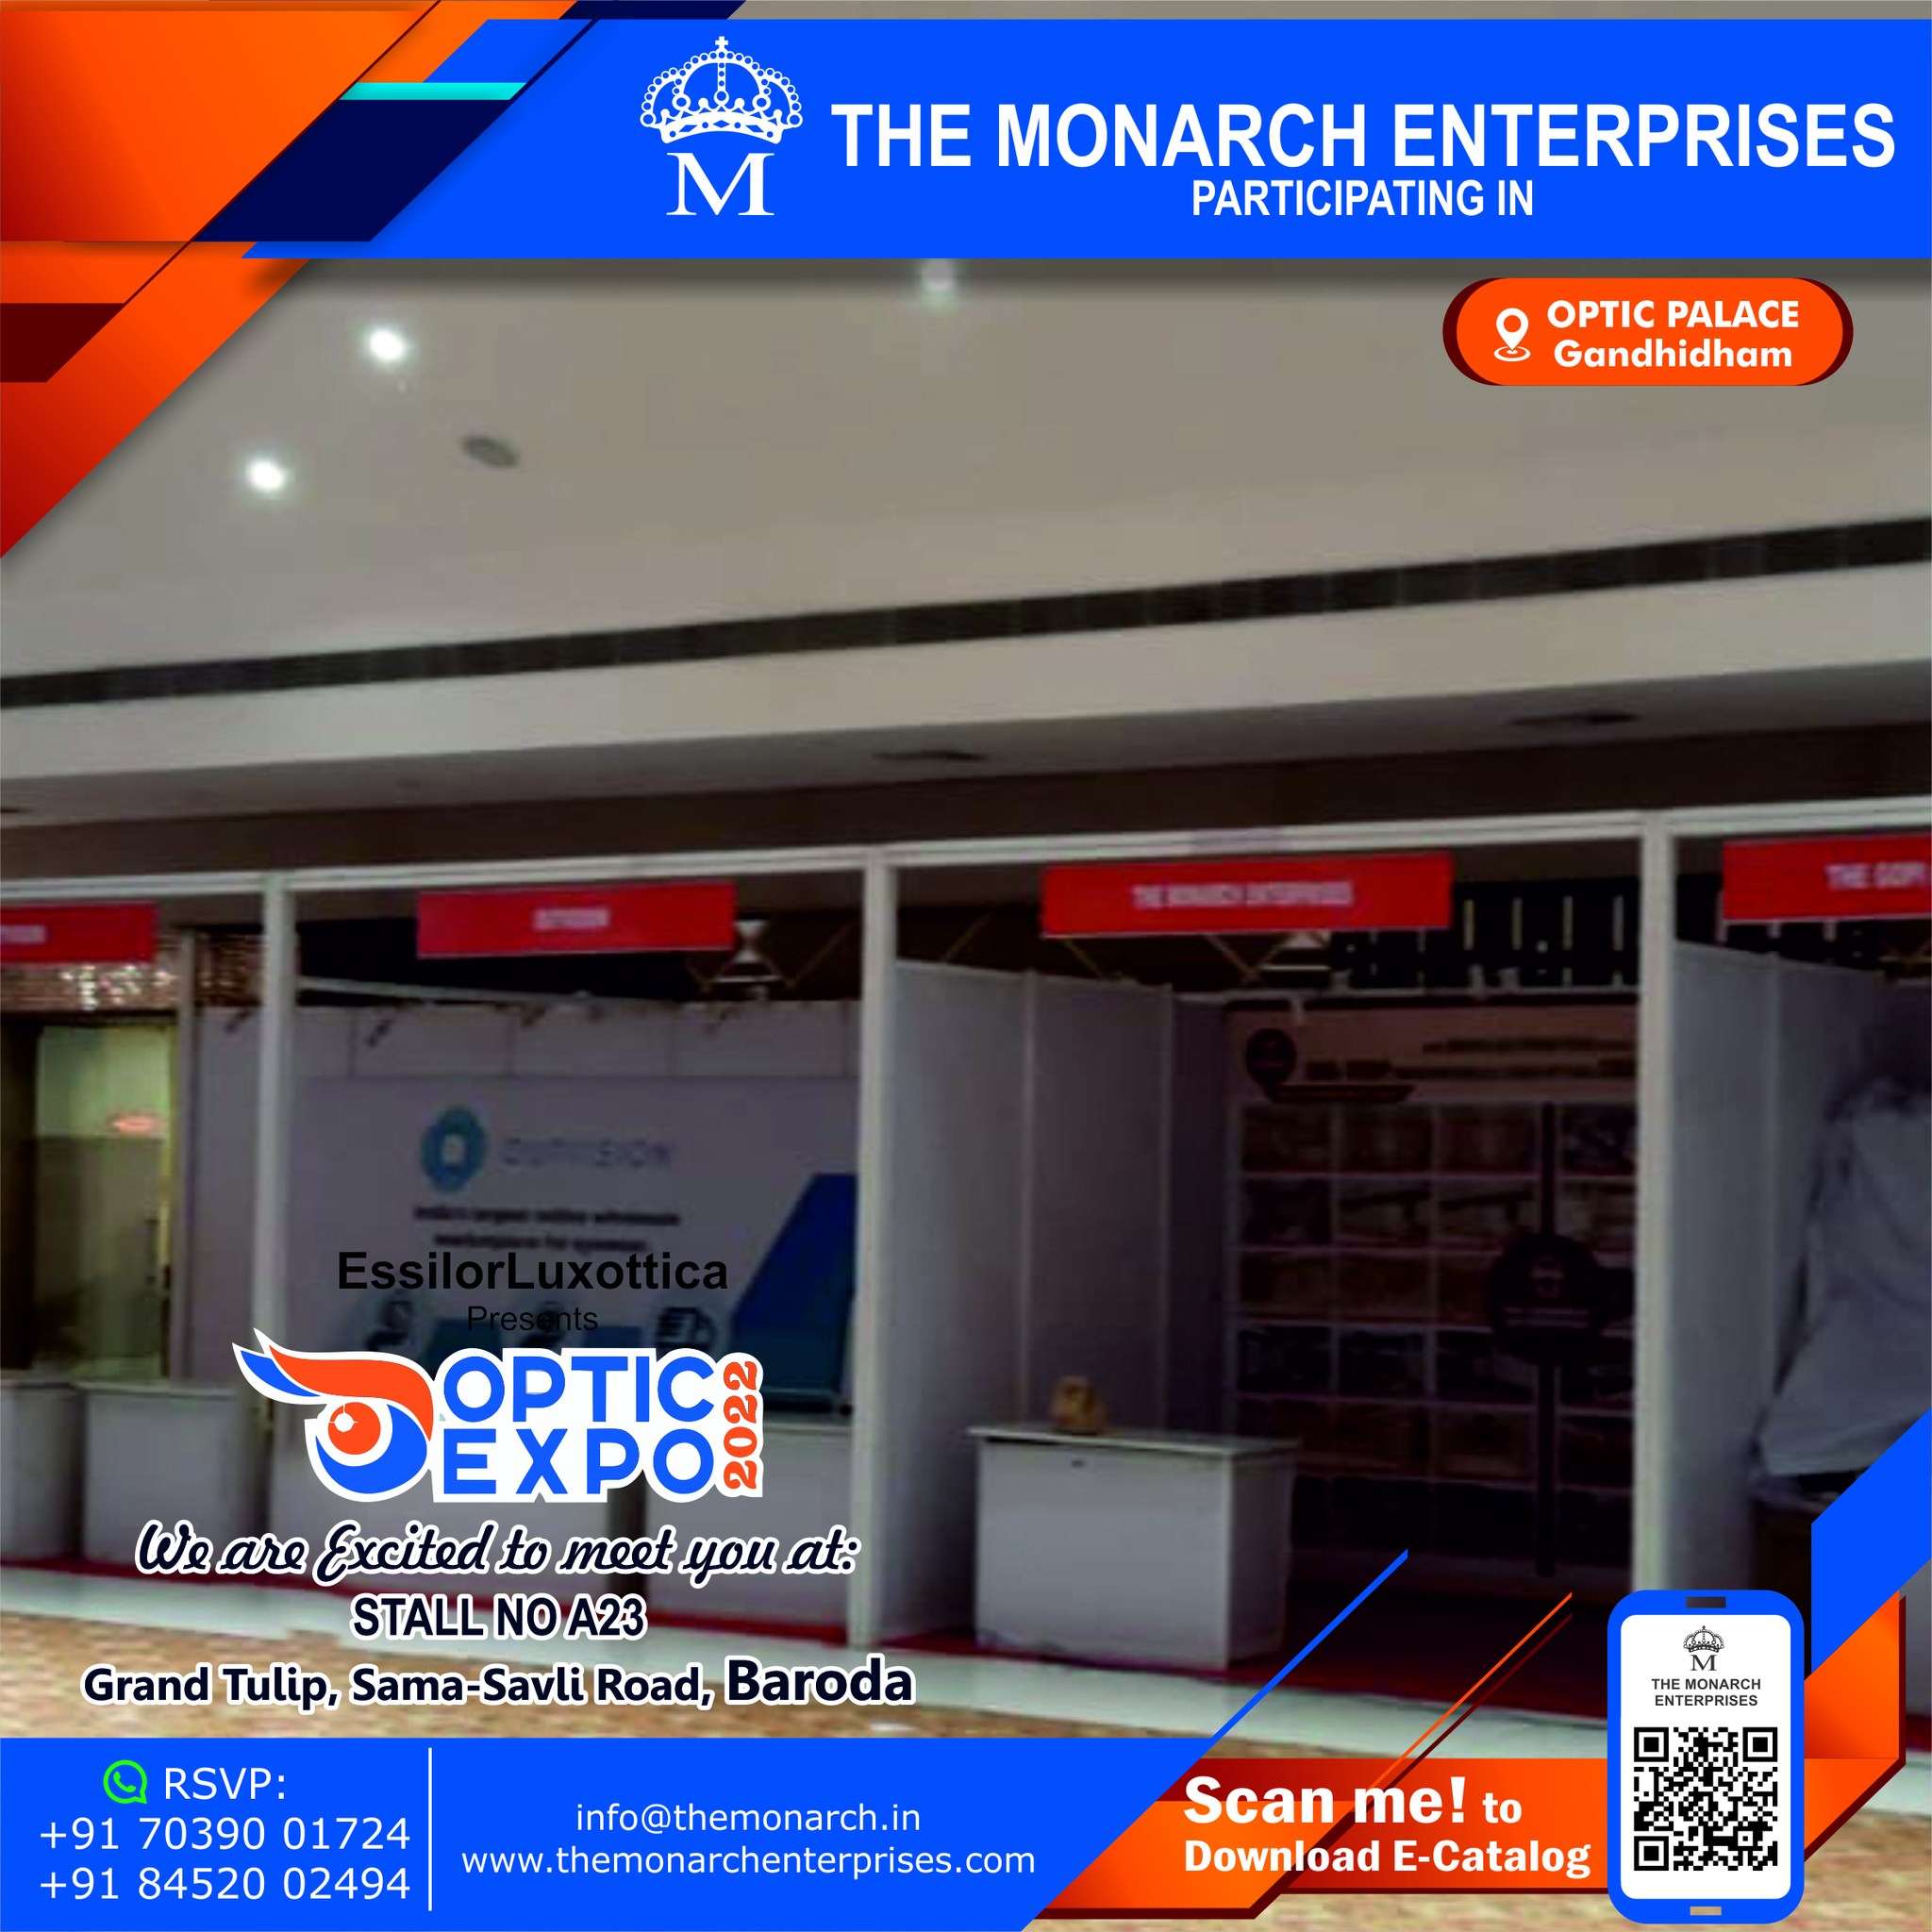 The Monarch Enterprises